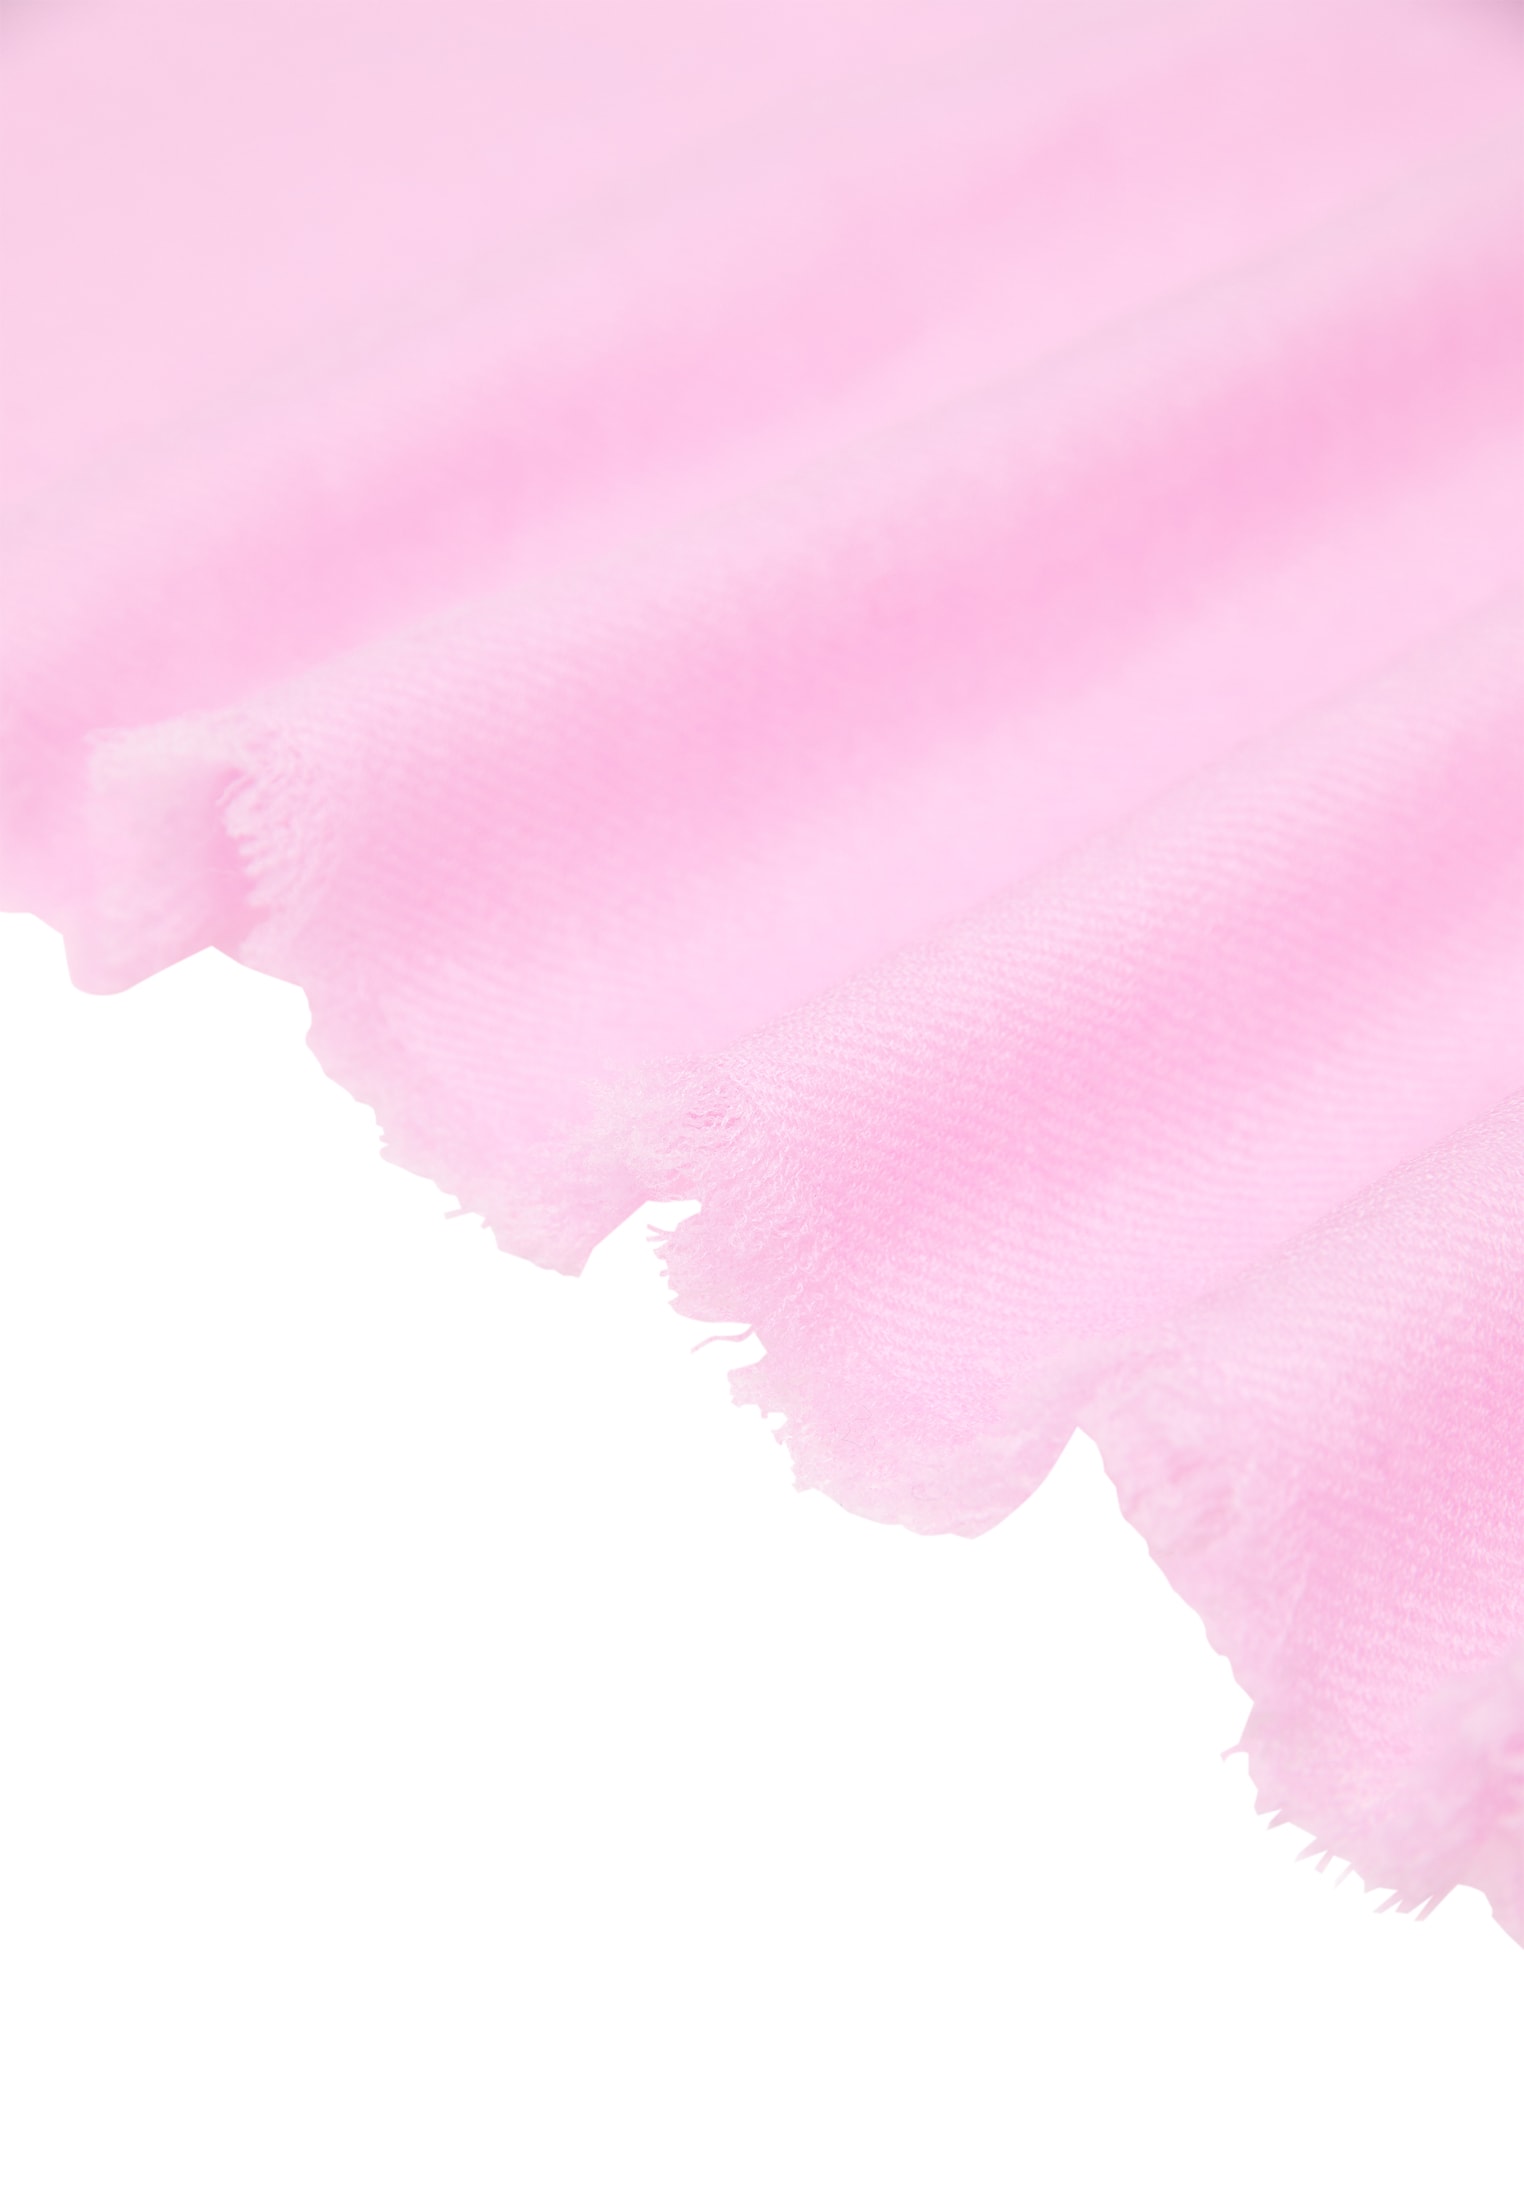 Schal in soft pink unifarben